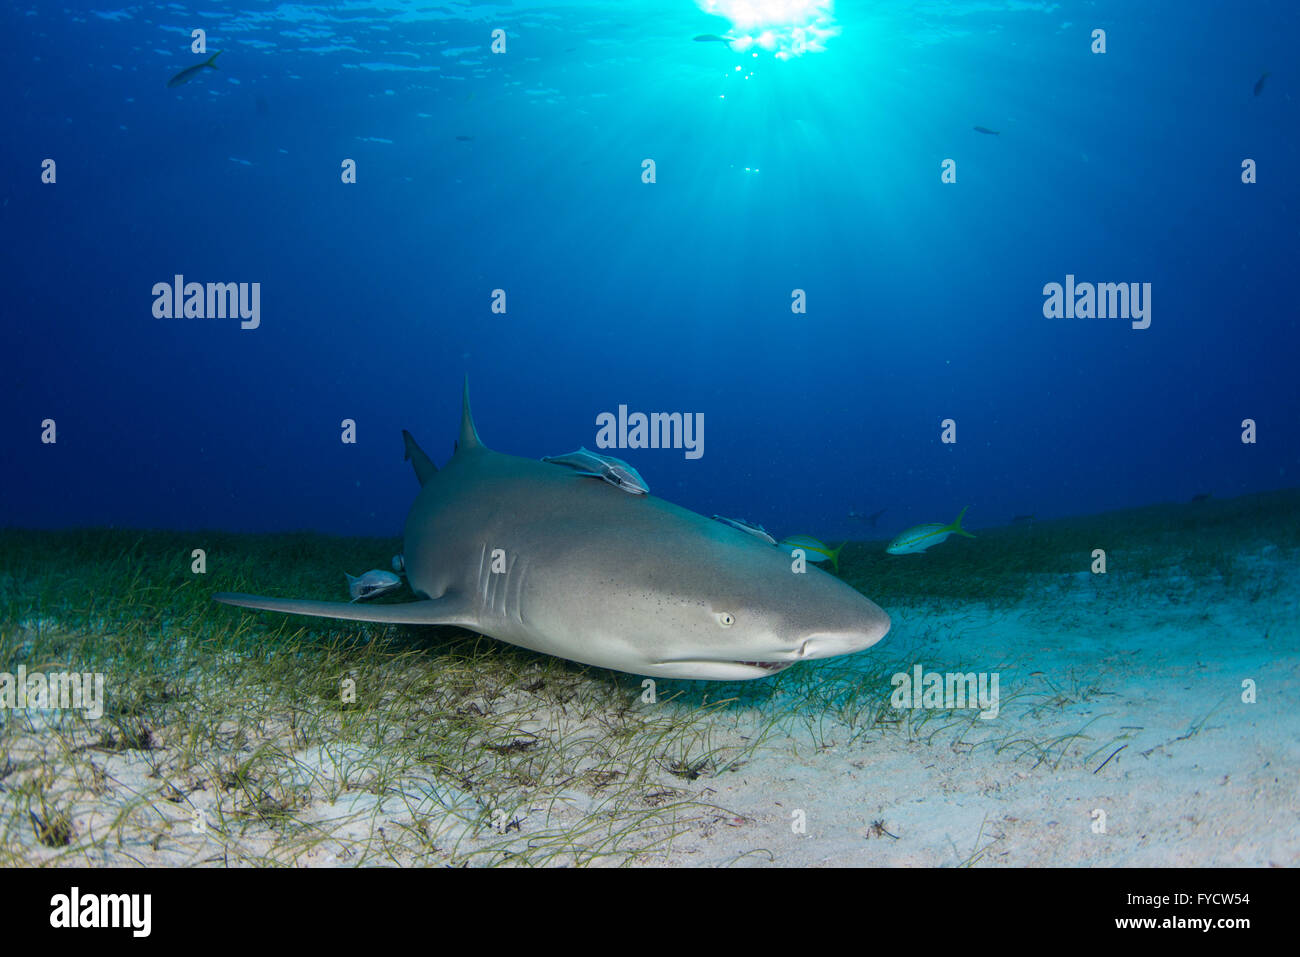 Lemon shark, Negaprion brevirostris, on seagrass, Bahamas Stock Photo